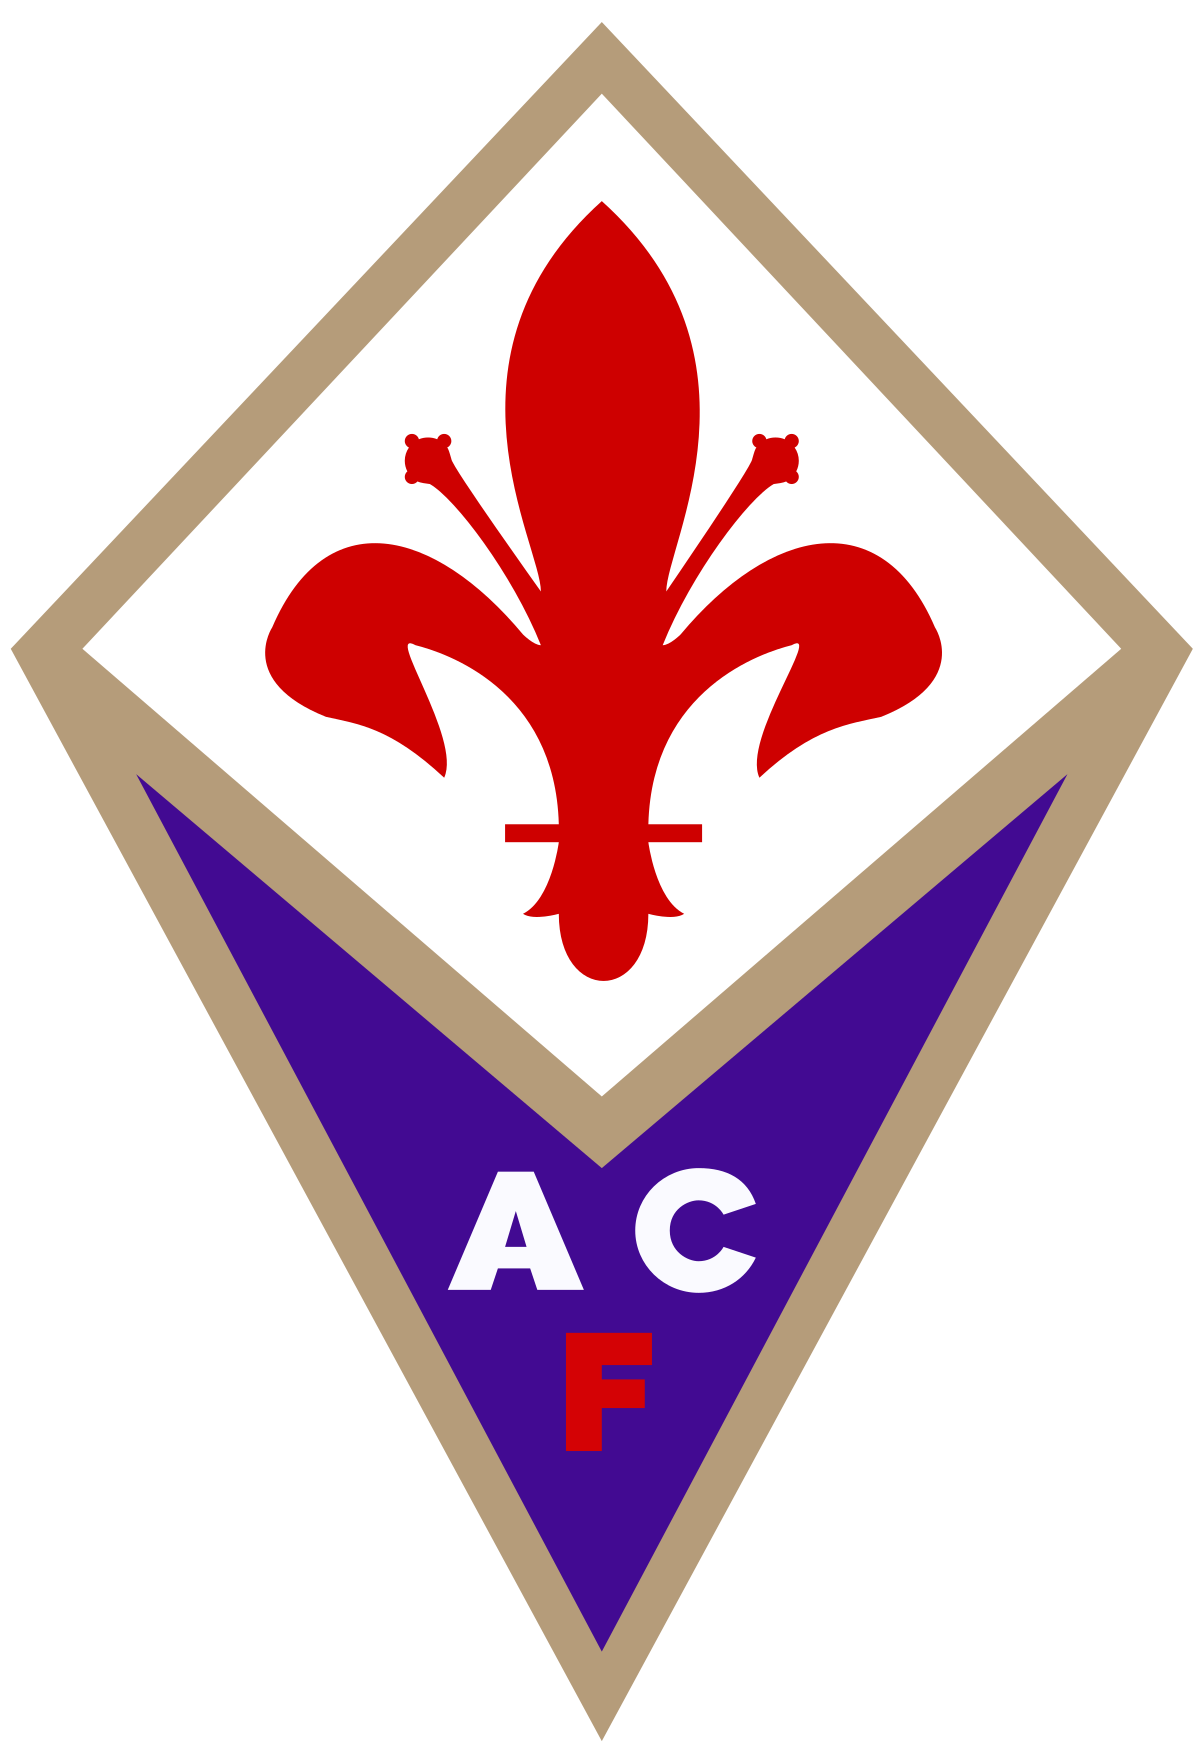 Empoli FC - Wikipedia